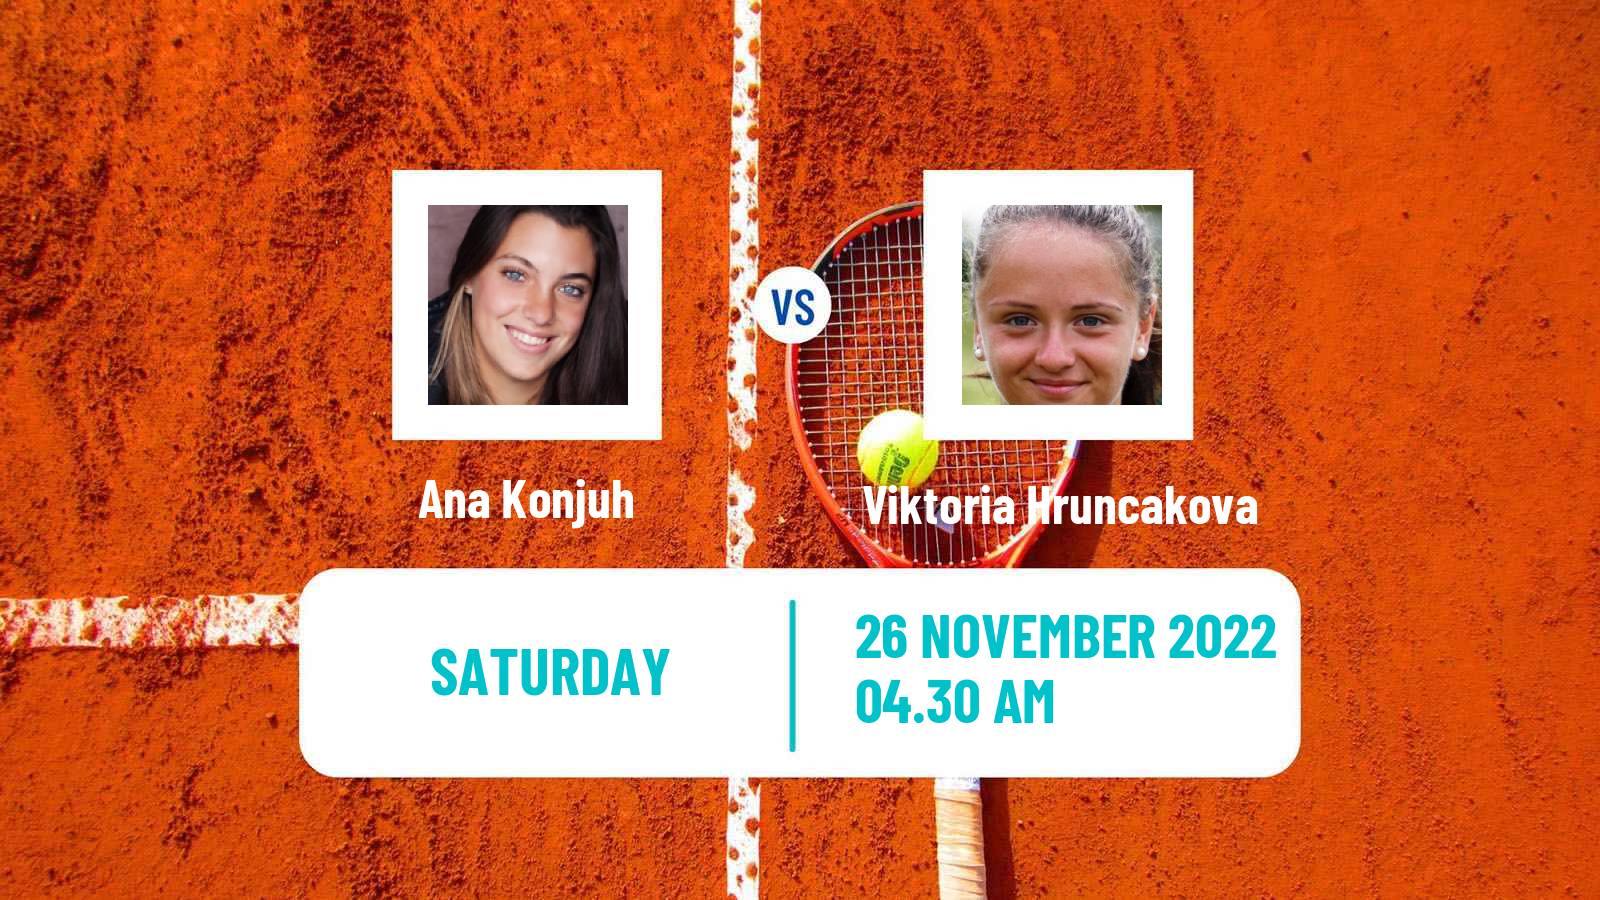 Tennis ITF Tournaments Ana Konjuh - Viktoria Hruncakova